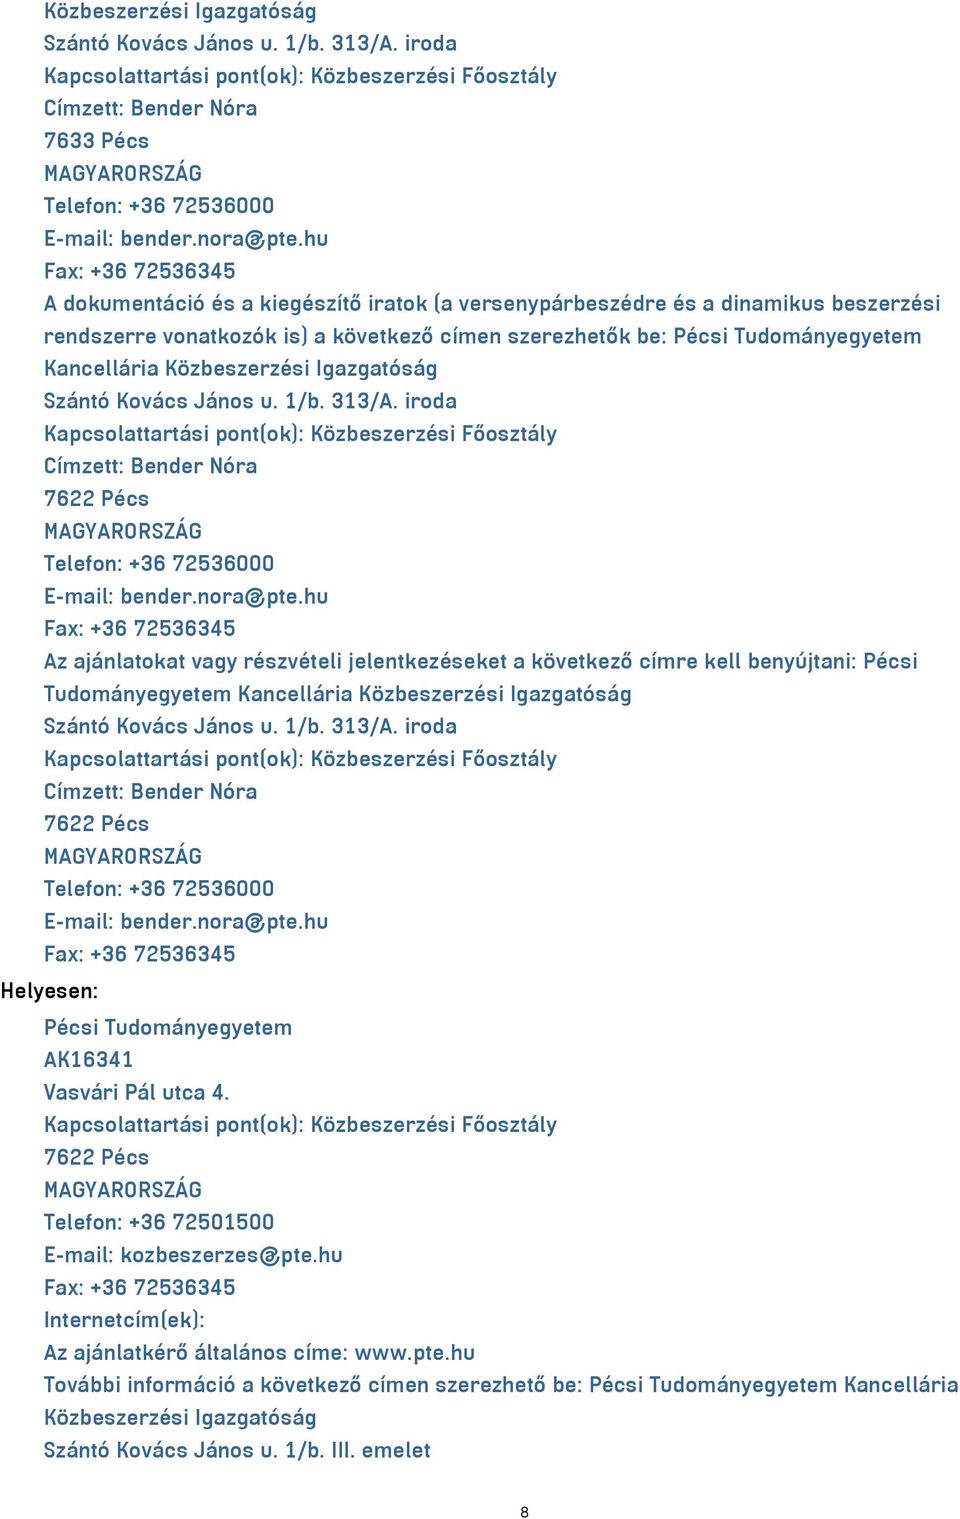 hu Fax: +36 72536345 A dokumentáció és a kiegészítő iratok (a versenypárbeszédre és a dinamikus beszerzési rendszerre vonatkozók is) a következő címen szerezhetők be: Pécsi Tudományegyetem